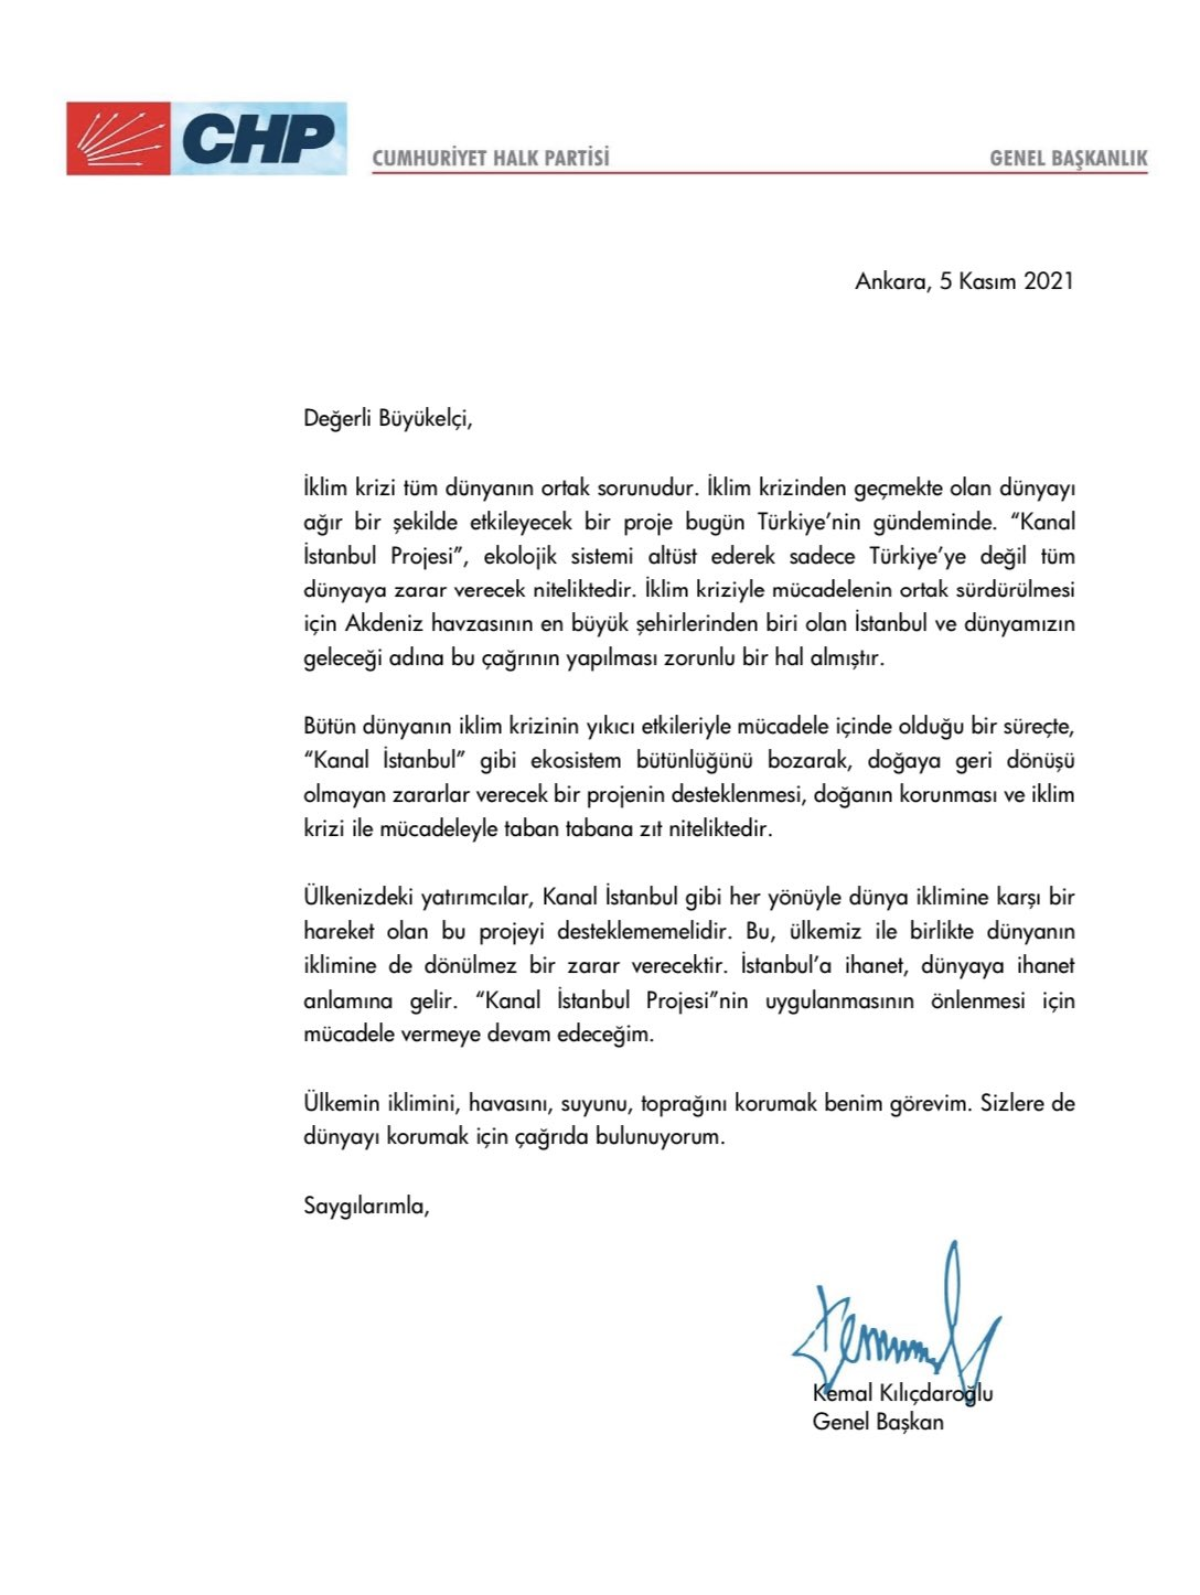 Son dakika... Kemal Kılıçdaroğlu’ndan Türkiye’deki tüm büyükelçiliklere çağrı mektubu